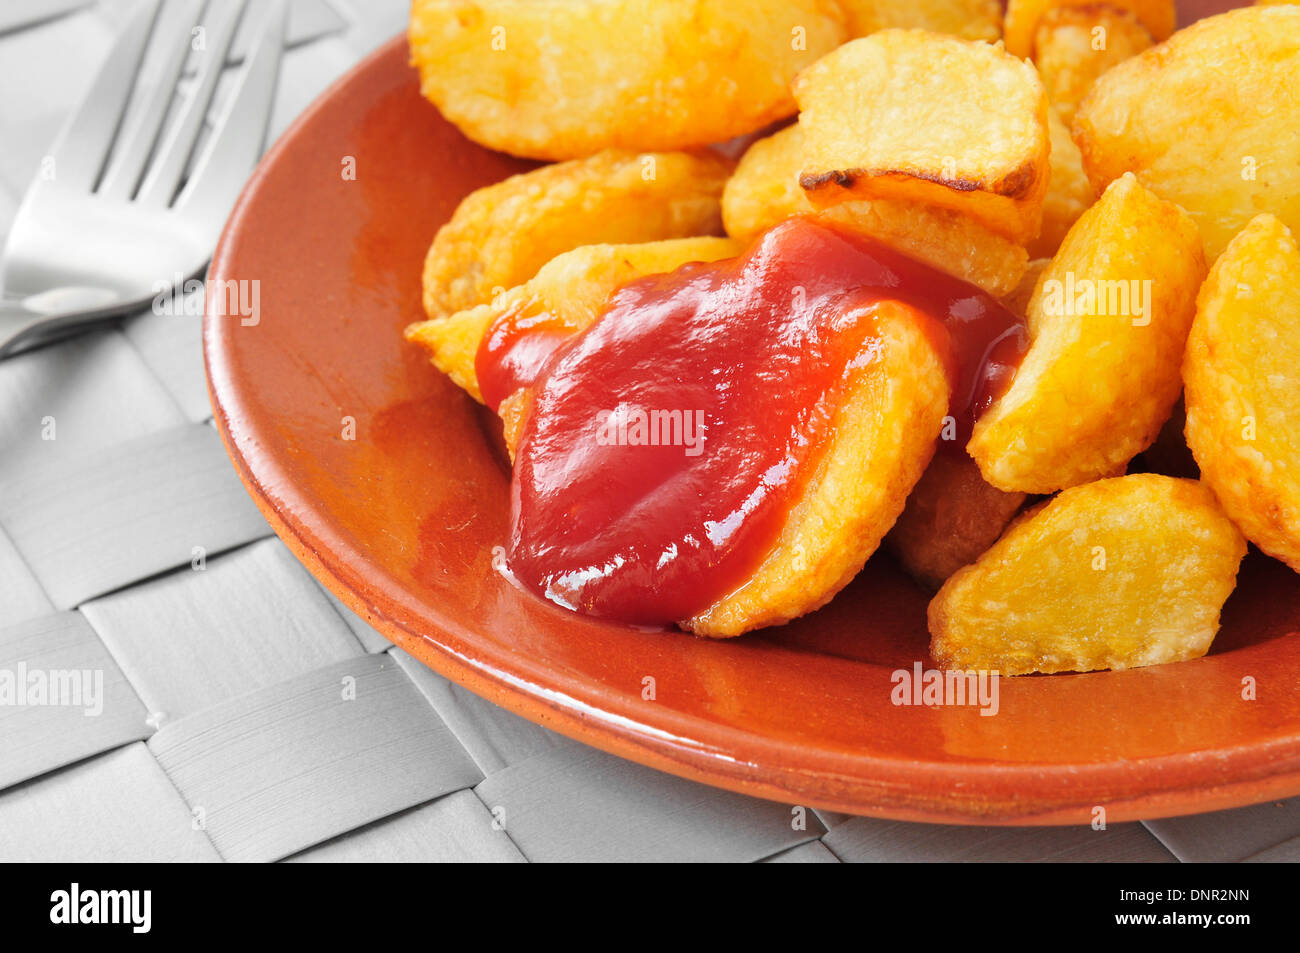 Libre d'une plaque comportant des patatas bravas, des pommes de terre sautées avec une sauce chaude Banque D'Images